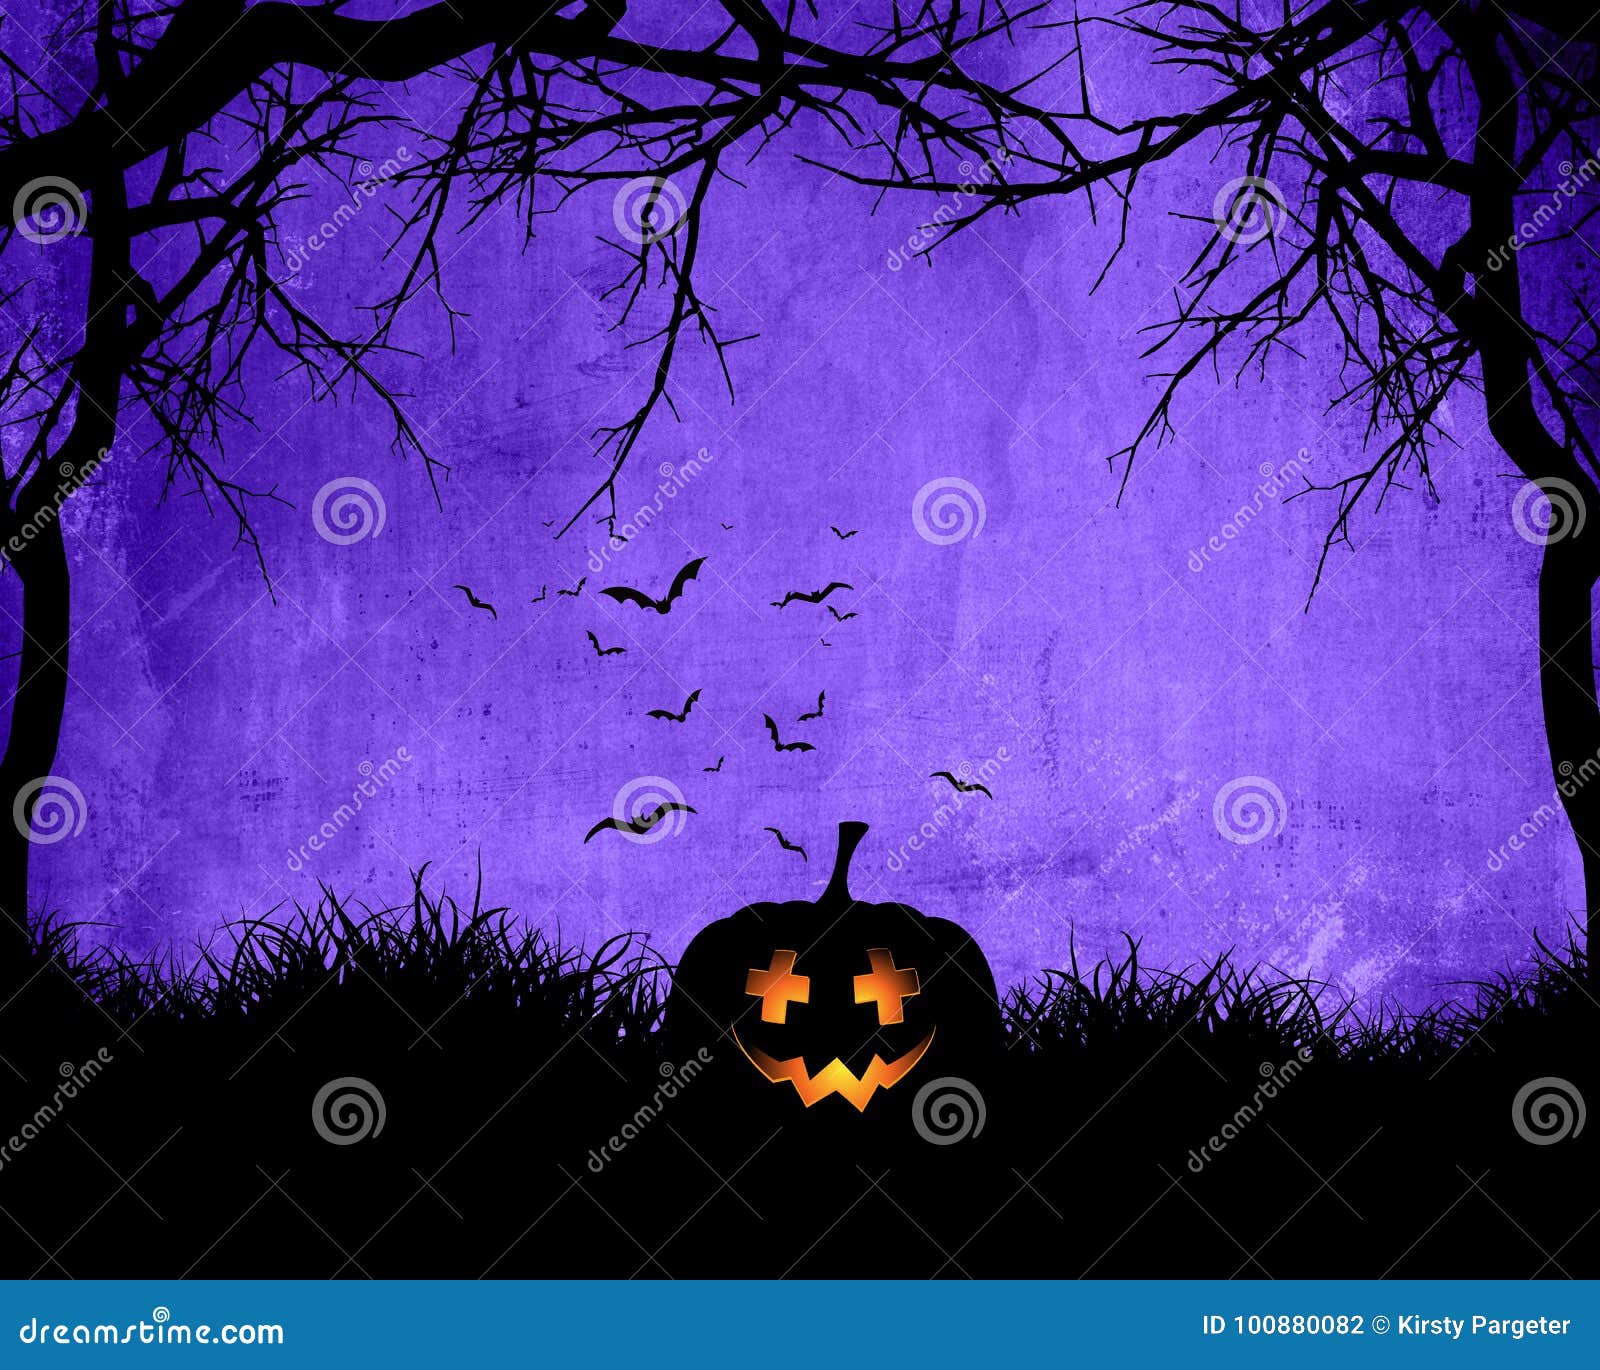 100000 Purple halloween wallpaper Vector Images  Depositphotos